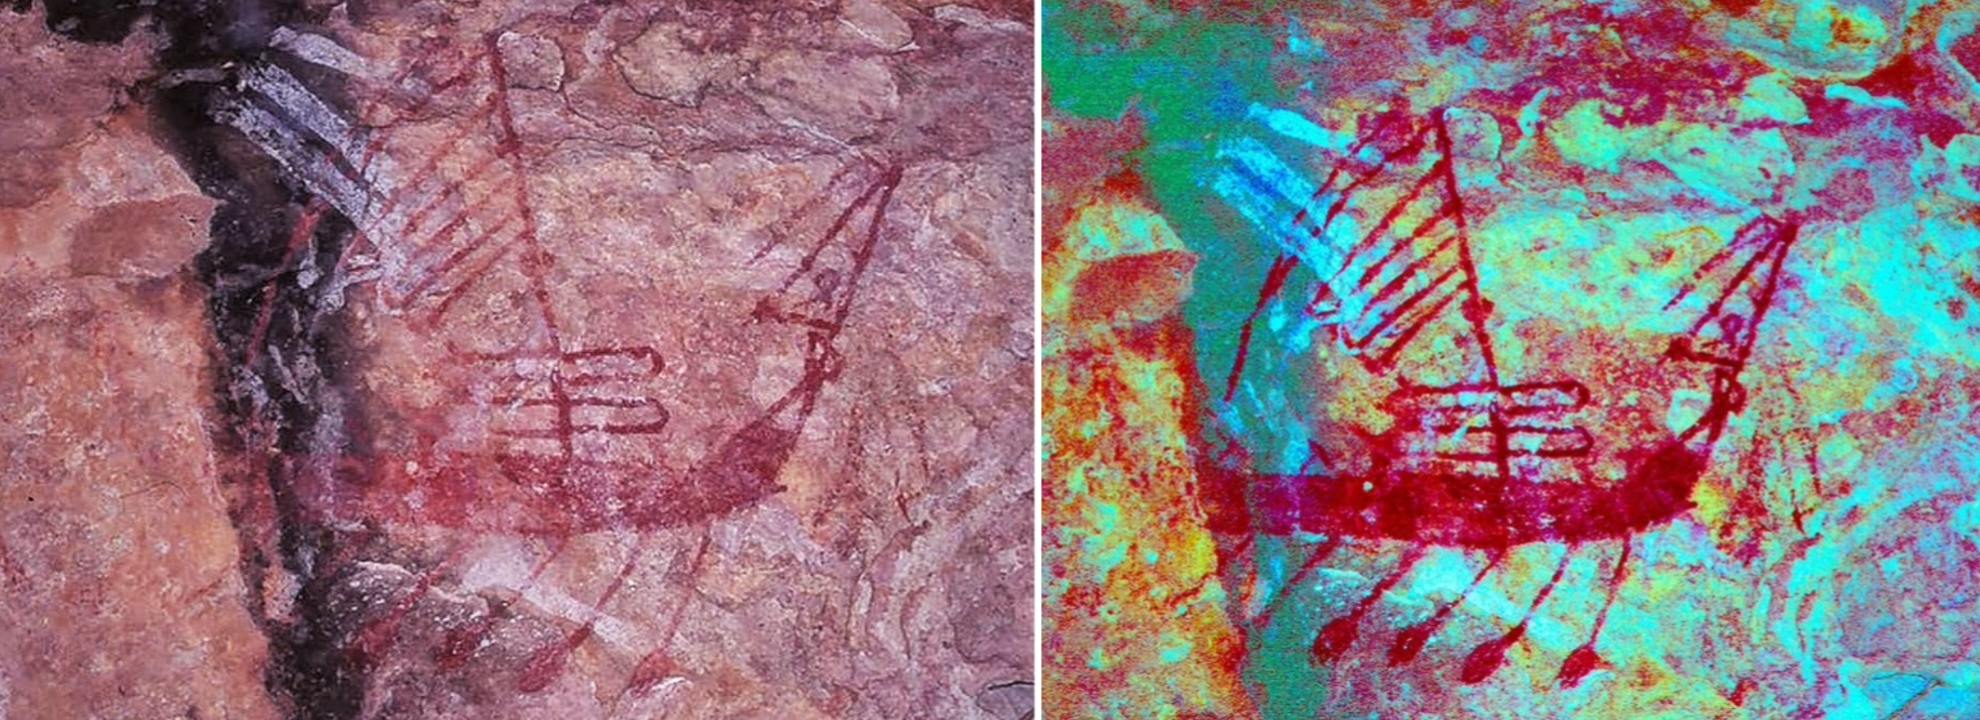 Des bateaux des Moluques d'Indonésie identifiés dans l'art rupestre australien 1